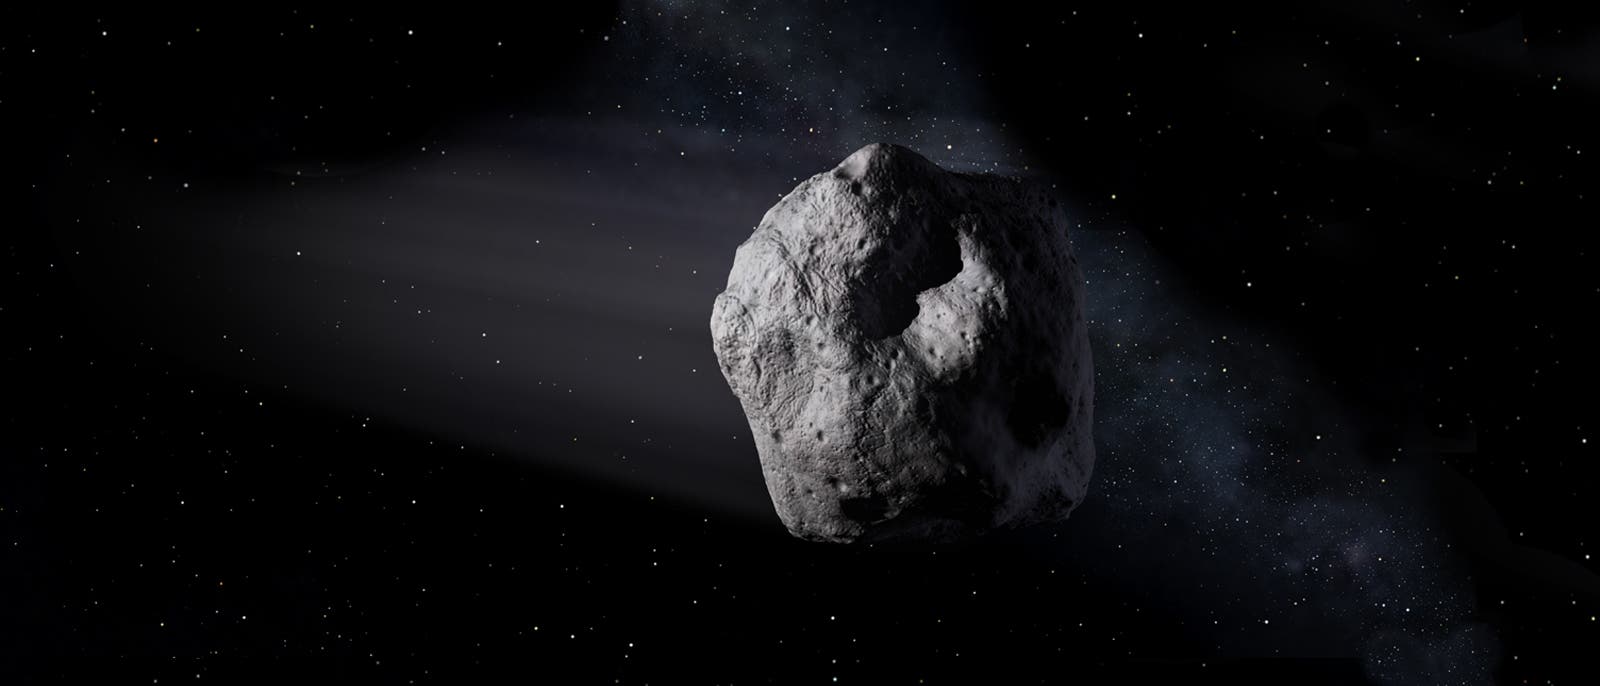 lllustration eines Asteroiden im All